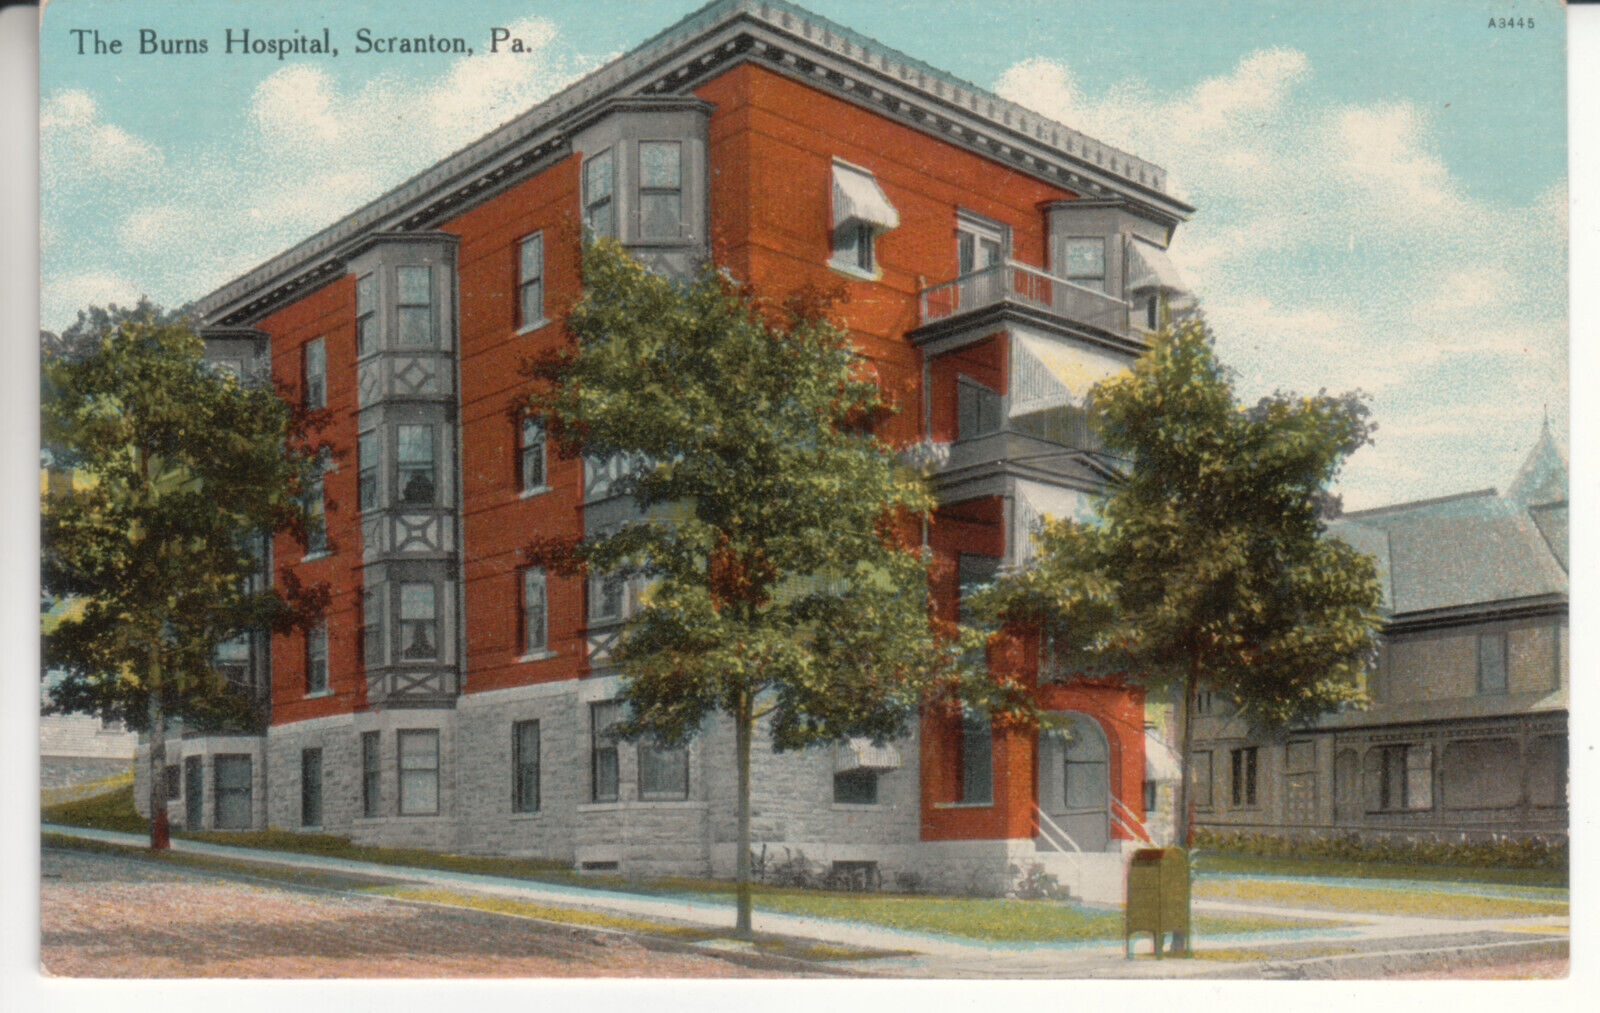 Scranton PA Pennsylvania - The Burns Hospital - Postcard - circa 1910